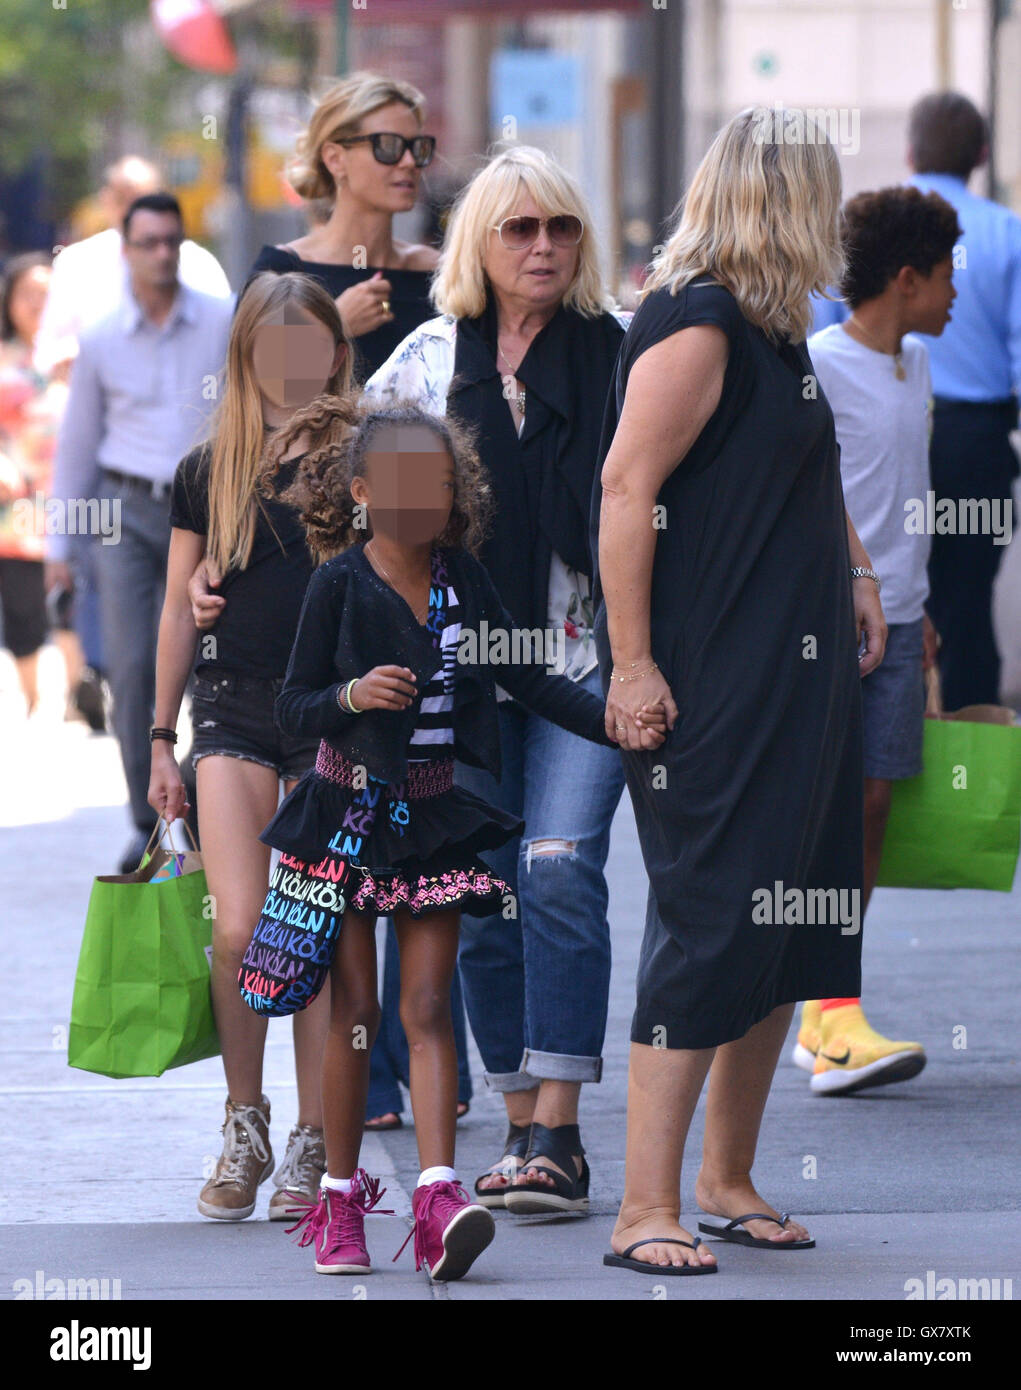 Heidi Klum and her family walking around the Tribeca neighborhood in Lower Manhattan  Featuring: Heidi Klum, Helene Boshoven Samuel Where: New York City, New York, United States When: 27 Jun 2016 Stock Photo